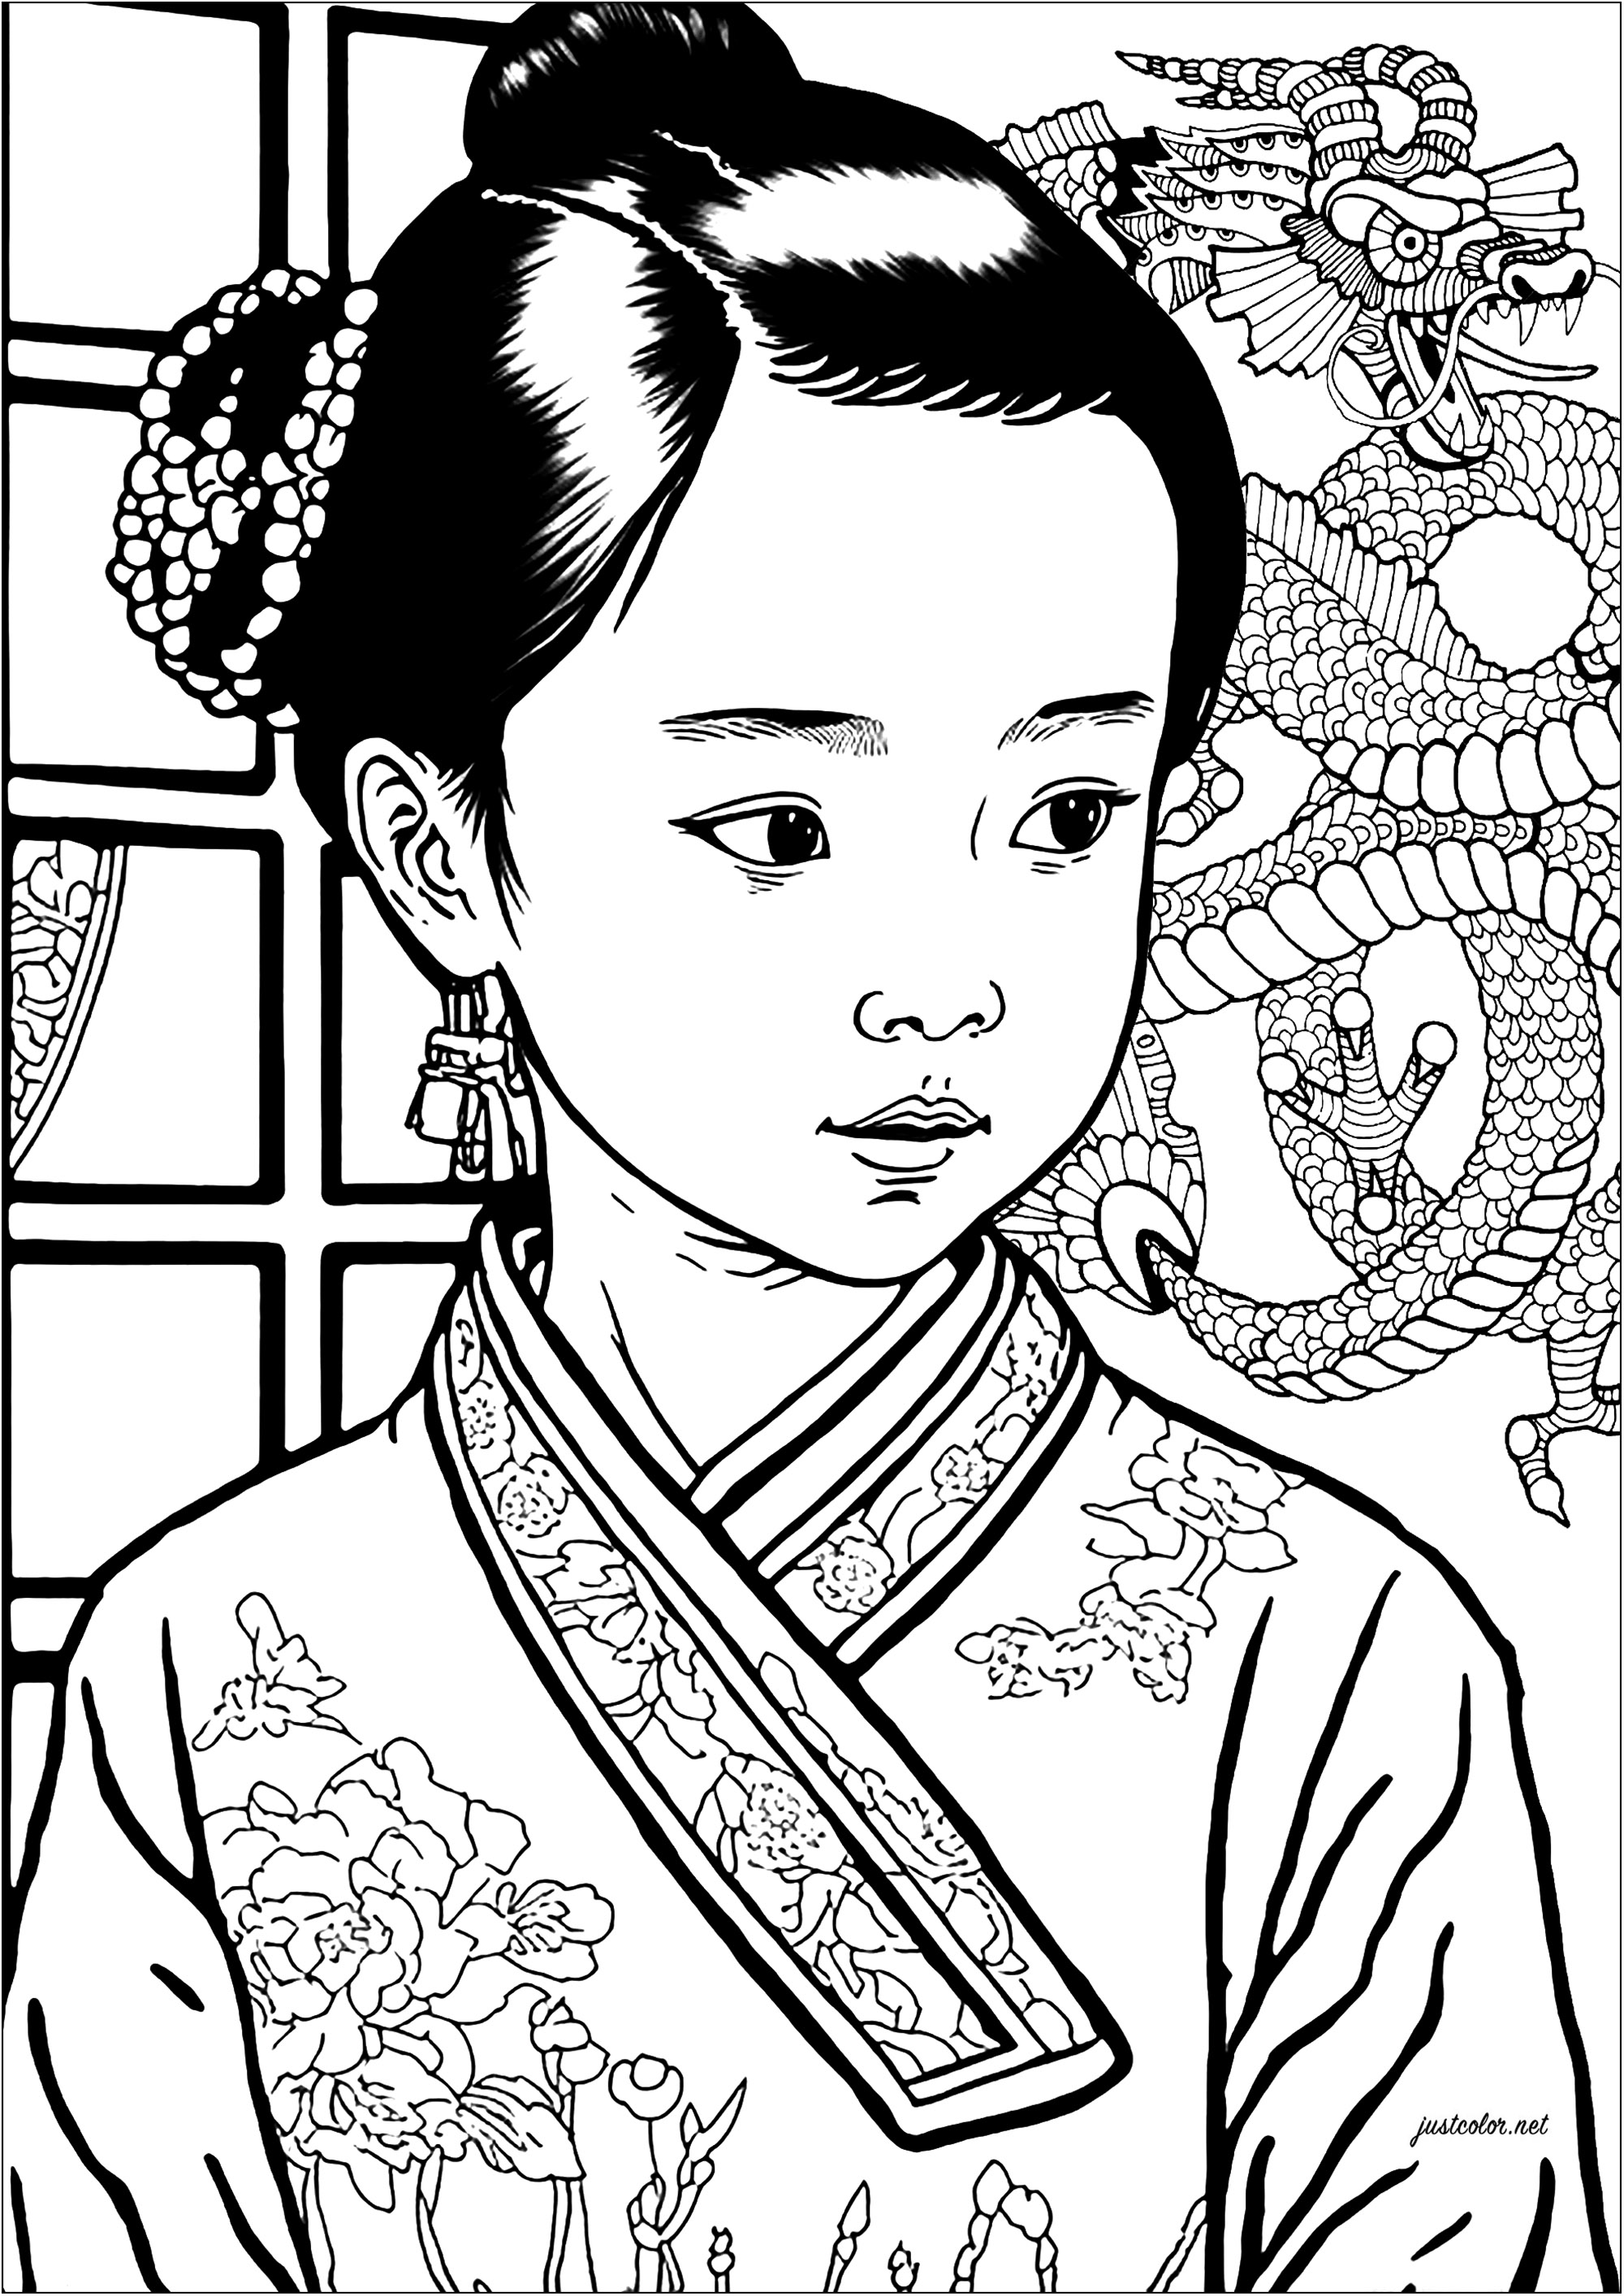 Beau coloriage d'une chinoise en kimono, avec un dragon en arrière-plan